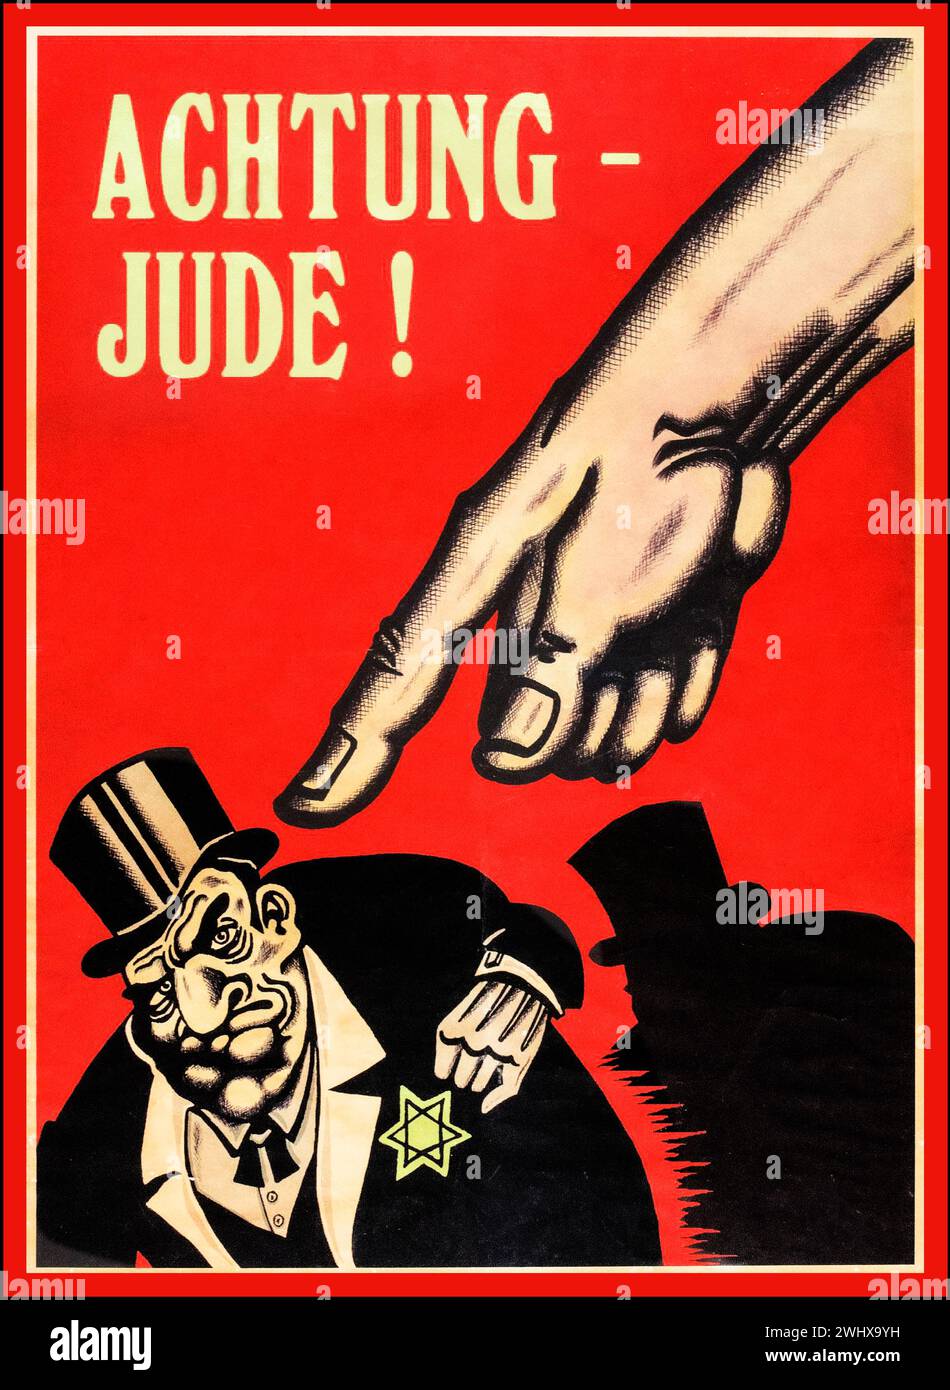 ACHTUNG JUDE WW2 années 1940 antisémite anti-juif raciste Allemagne nazie propagande Parti nazi affiche du troisième Reich, feauture une main puissante pointant vers un homme caricatural juif portant un costume d'affaires et un chapeau haut-de-forme avec l'étoile de David sur sa poitrine. L'affiche est intitulée : 'ACHTUNG - JUDE!' ('ATTENTION - JUIF!'). Banque D'Images